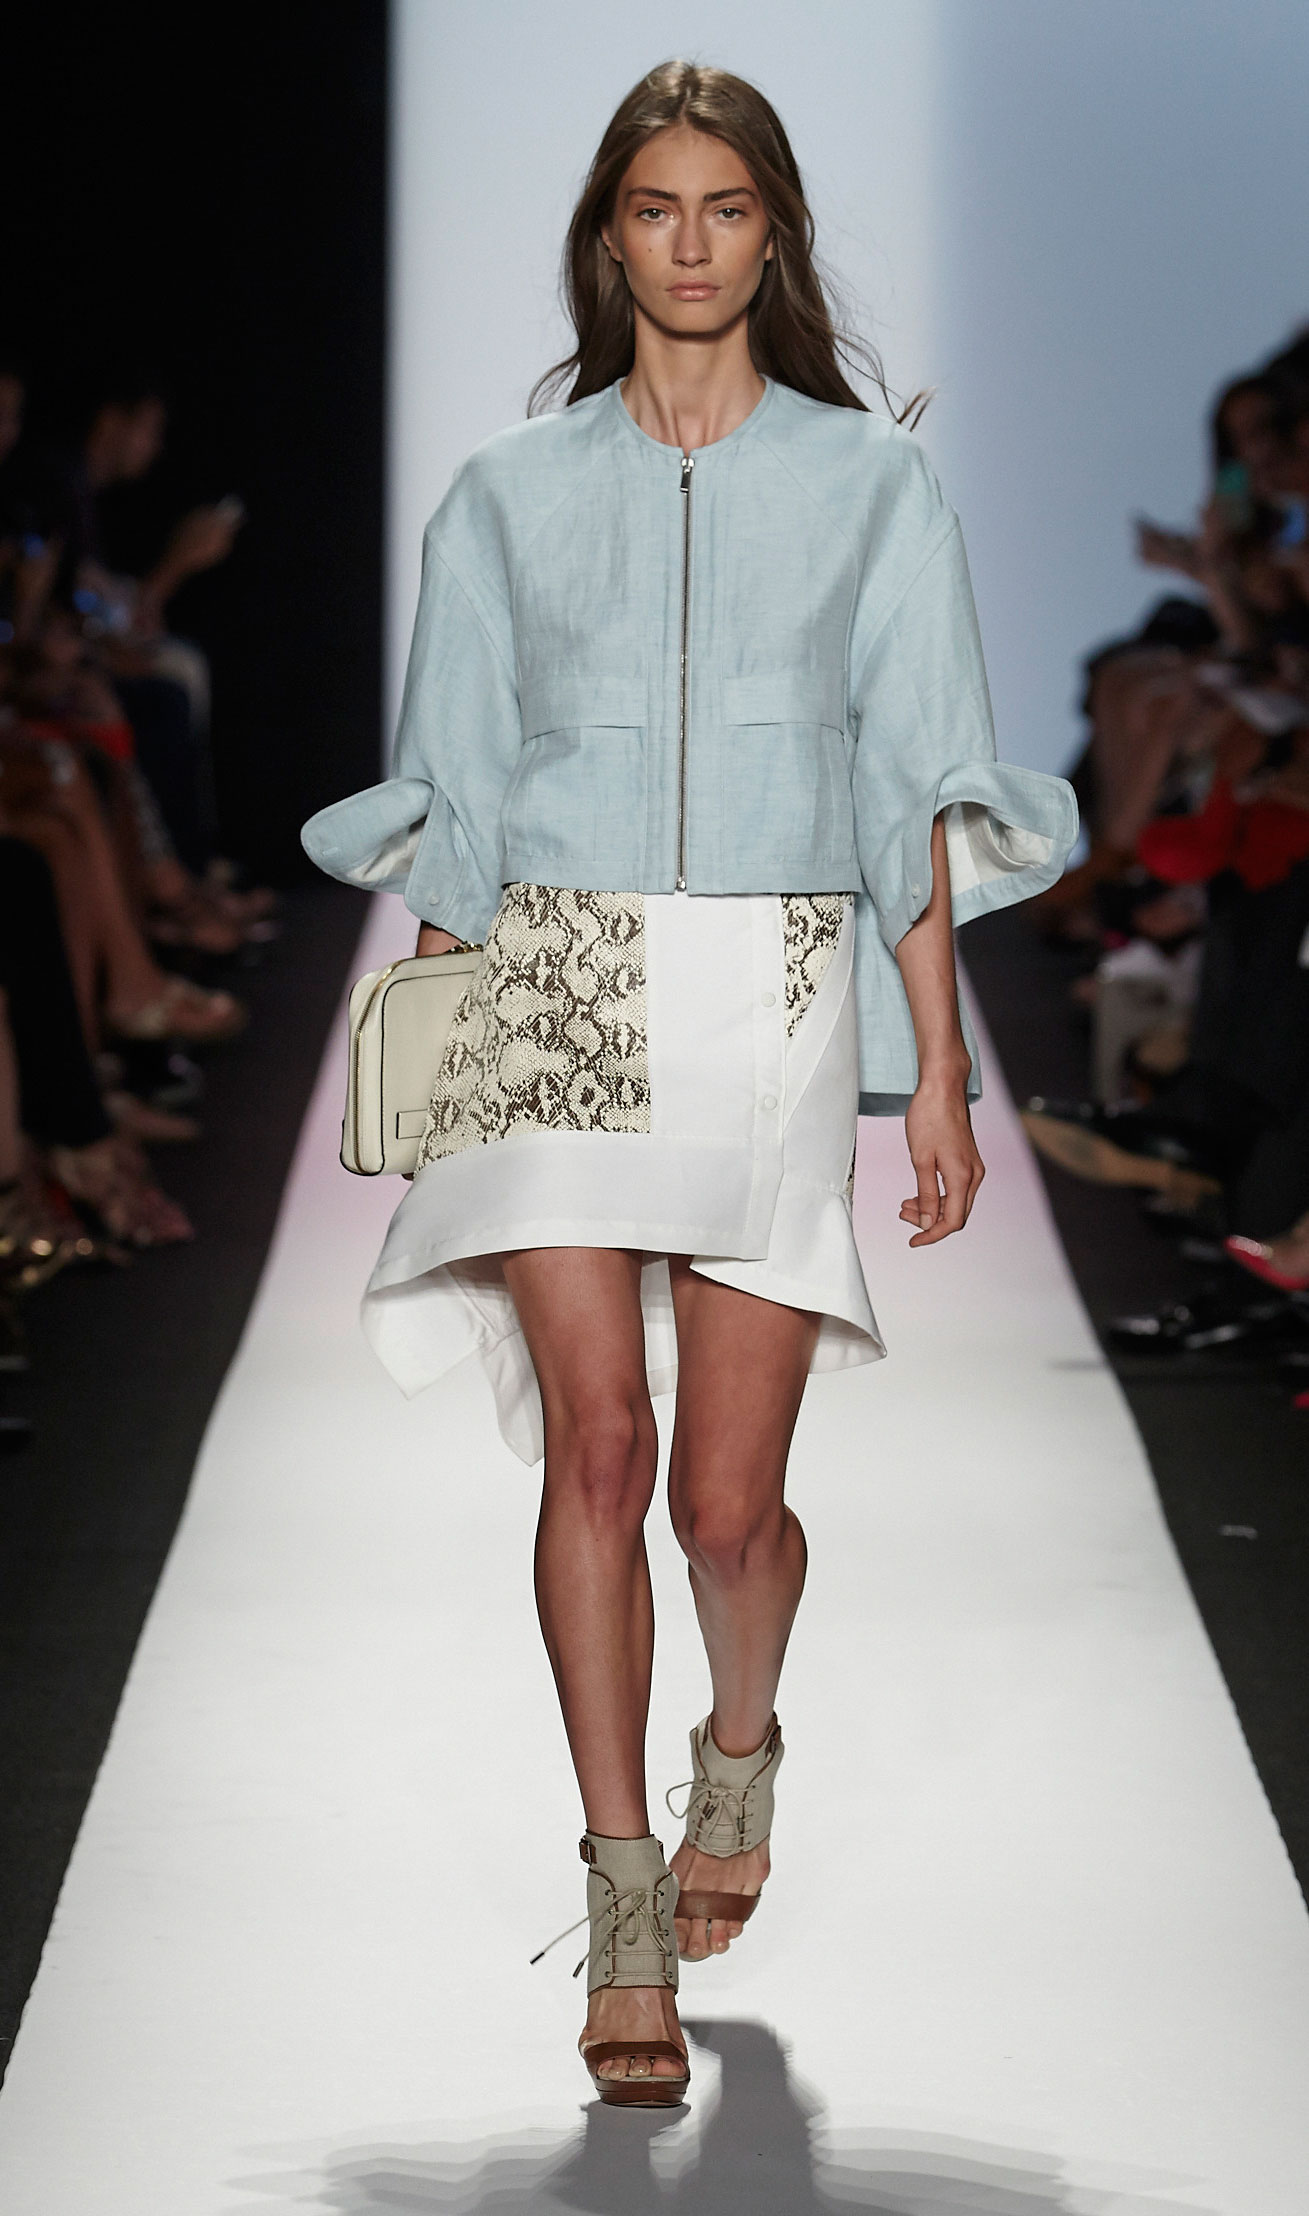 NY Fashion Week S14: BCBGMaxAzria | California Apparel News